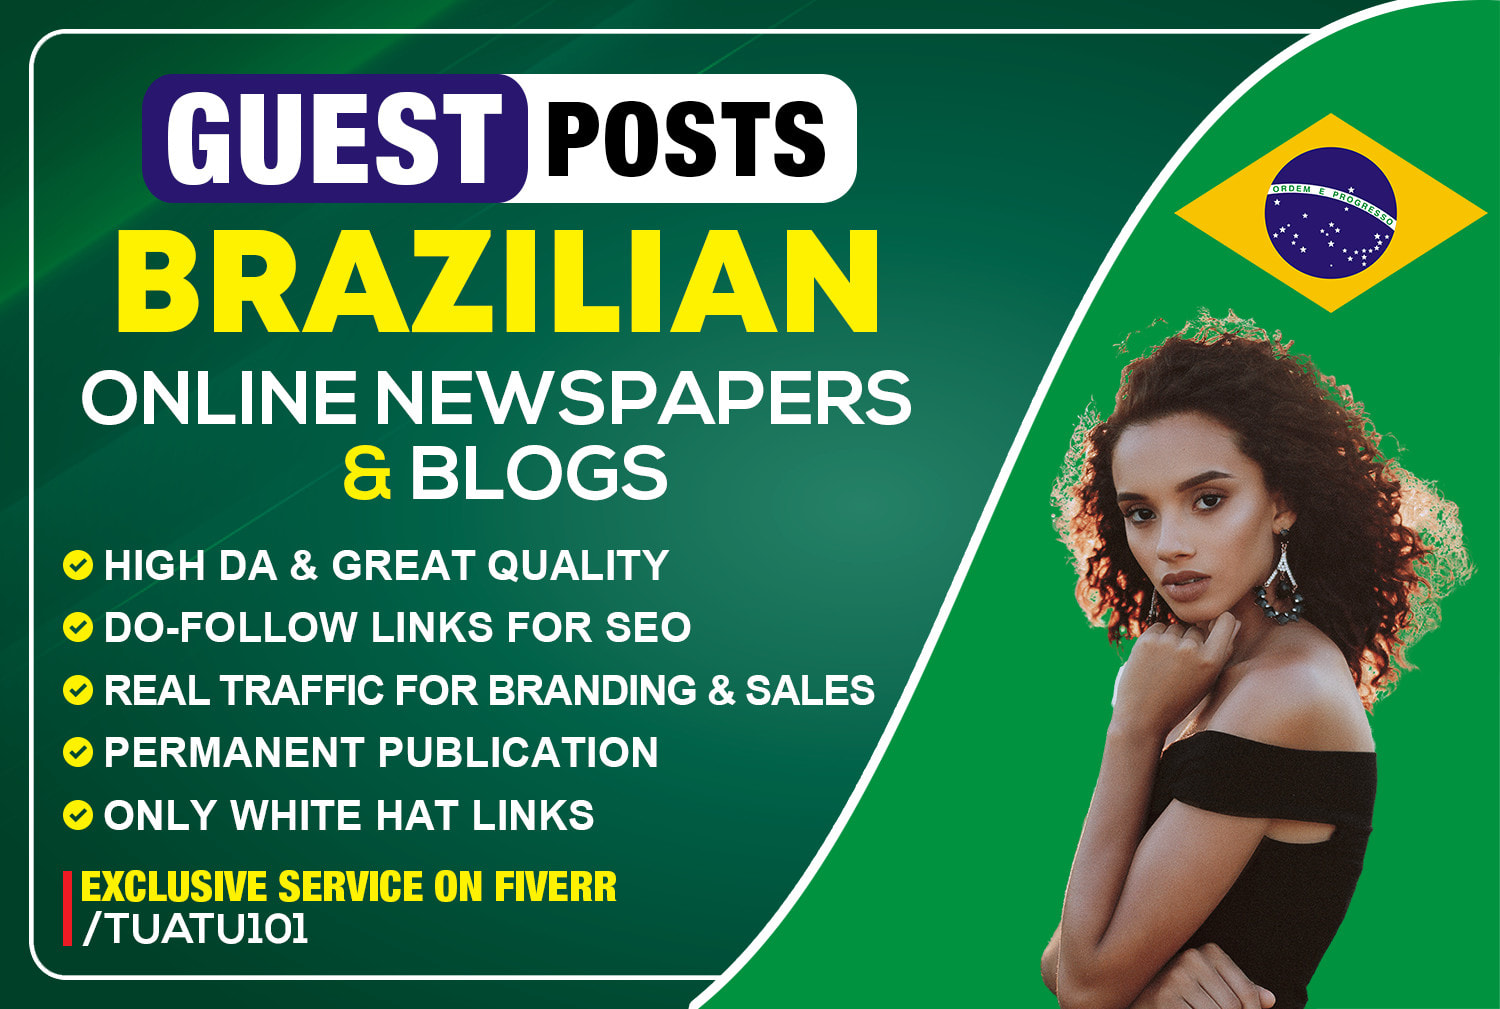 Noticias en periódicos brasileños para promover tu negocio